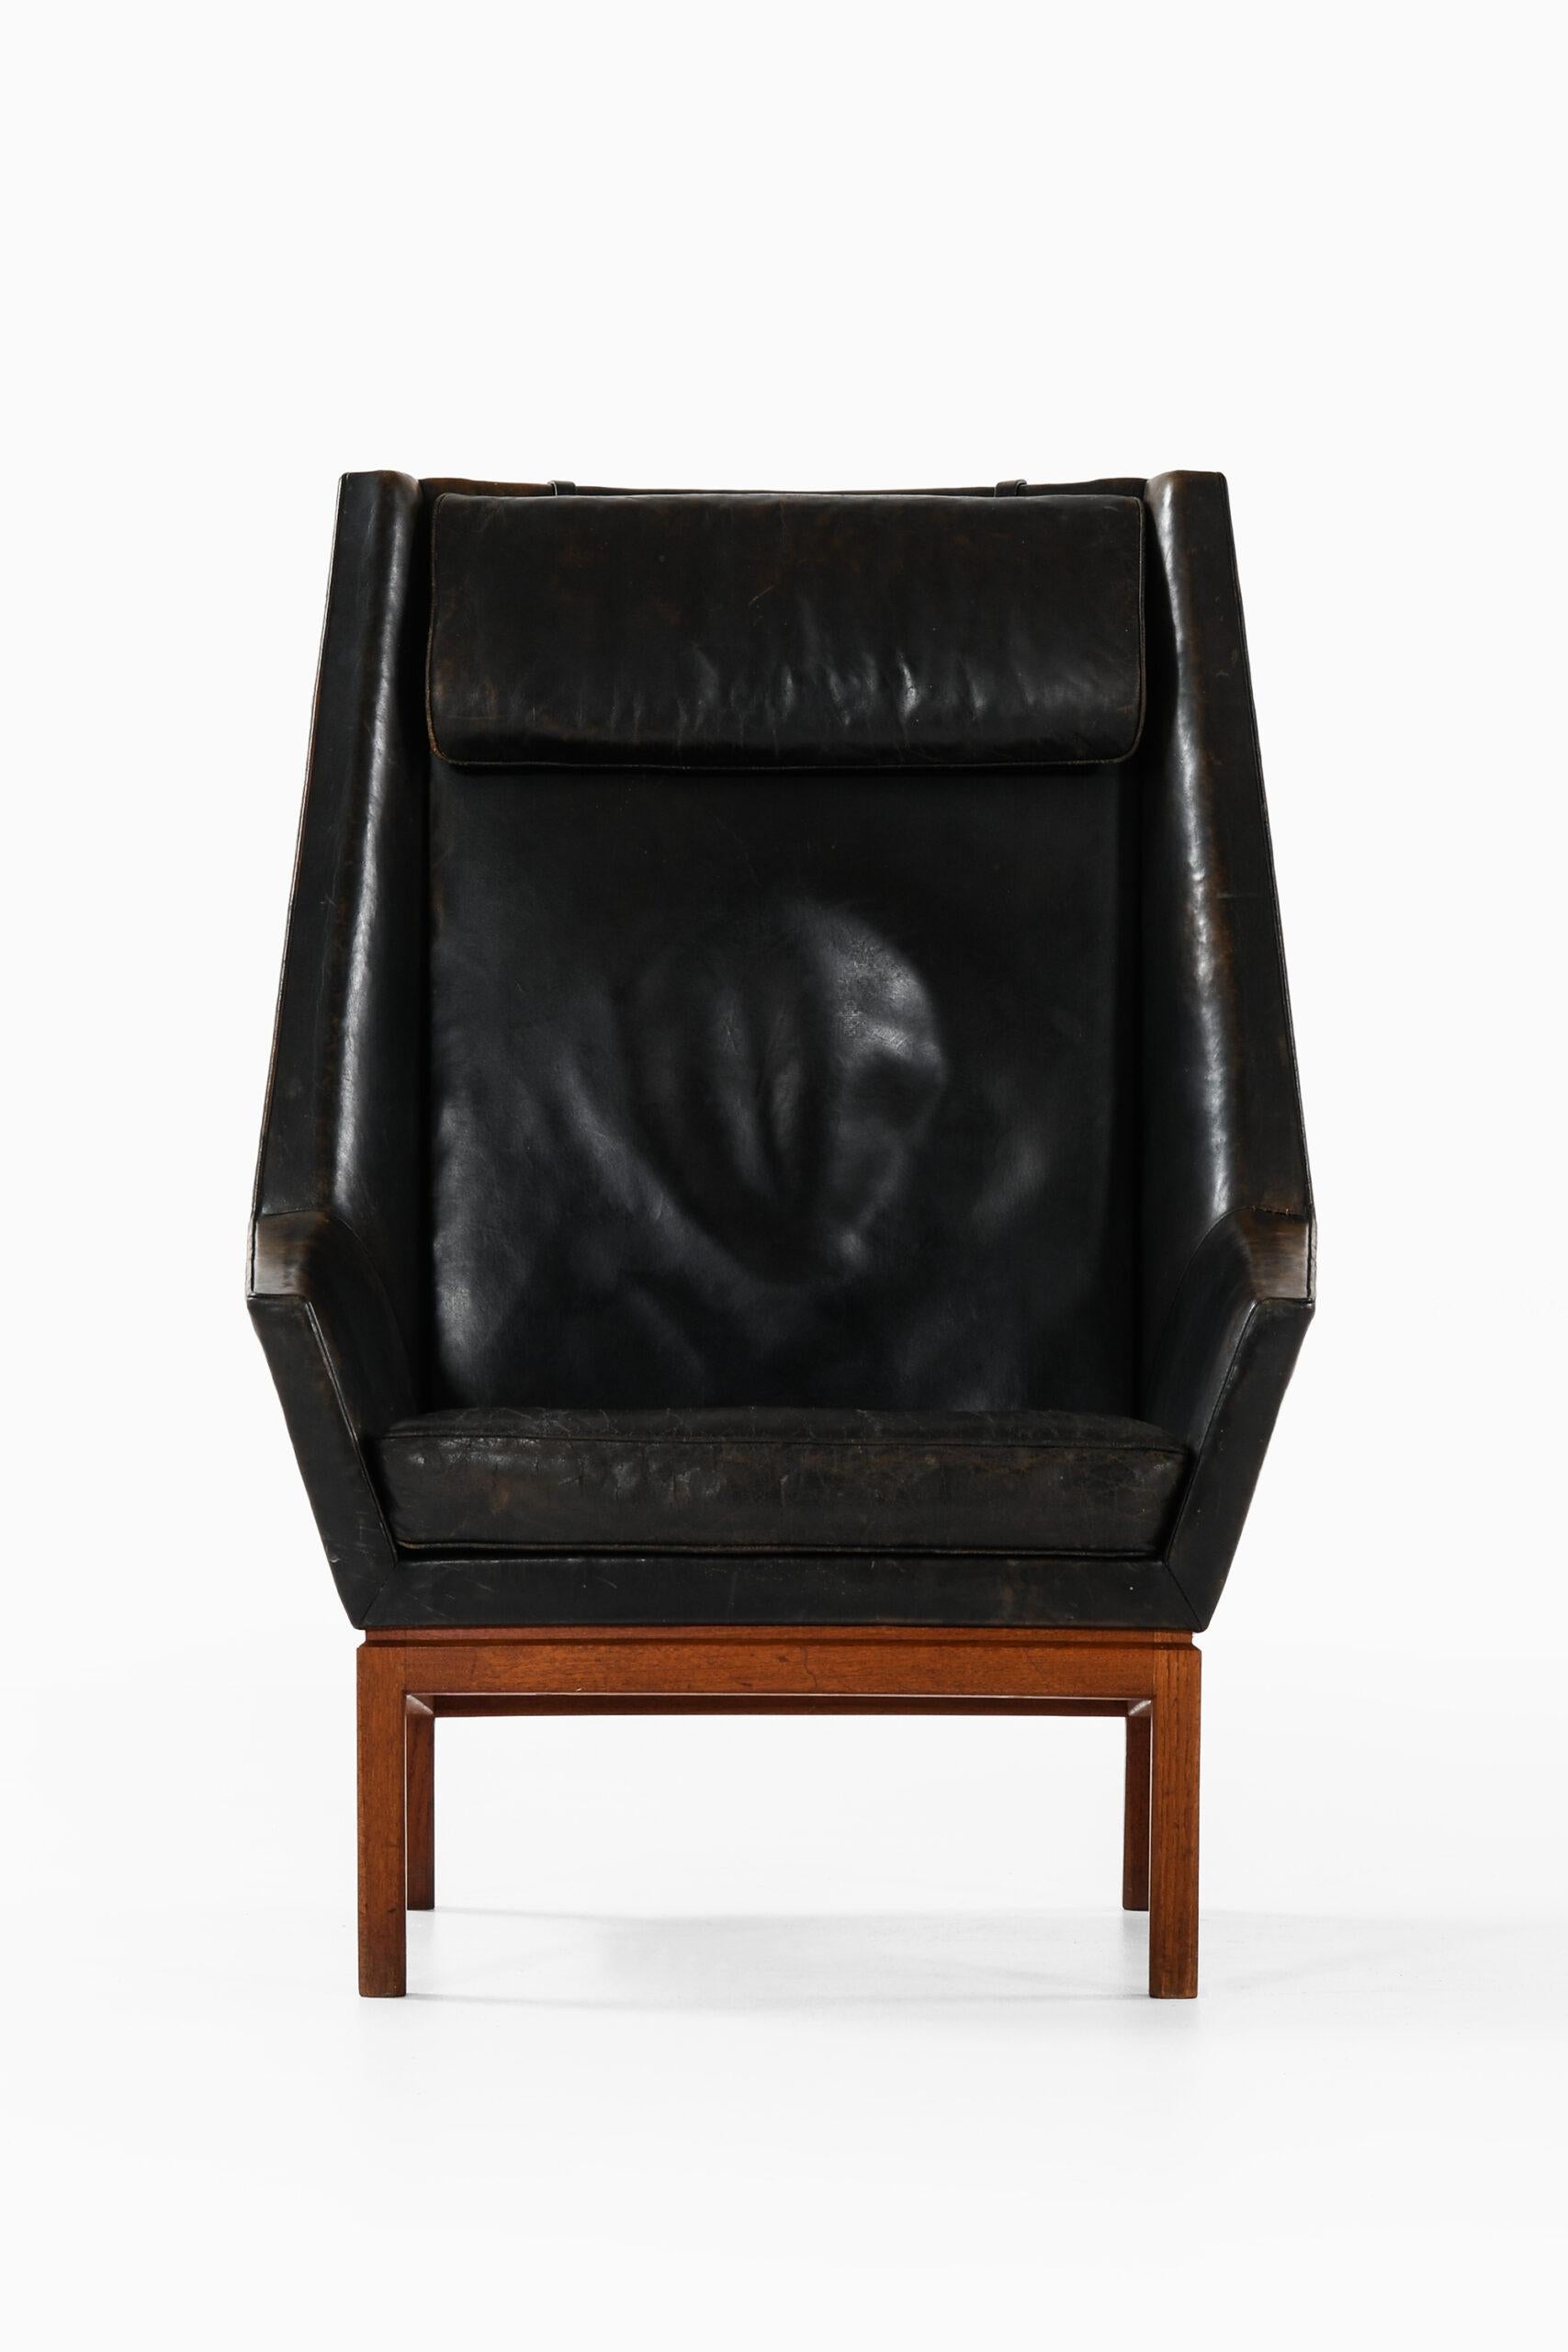 Rare fauteuil à dossier haut conçu par Erik Kolling Andersen. Produit par l'ébéniste Peder Pedersen au Danemark.